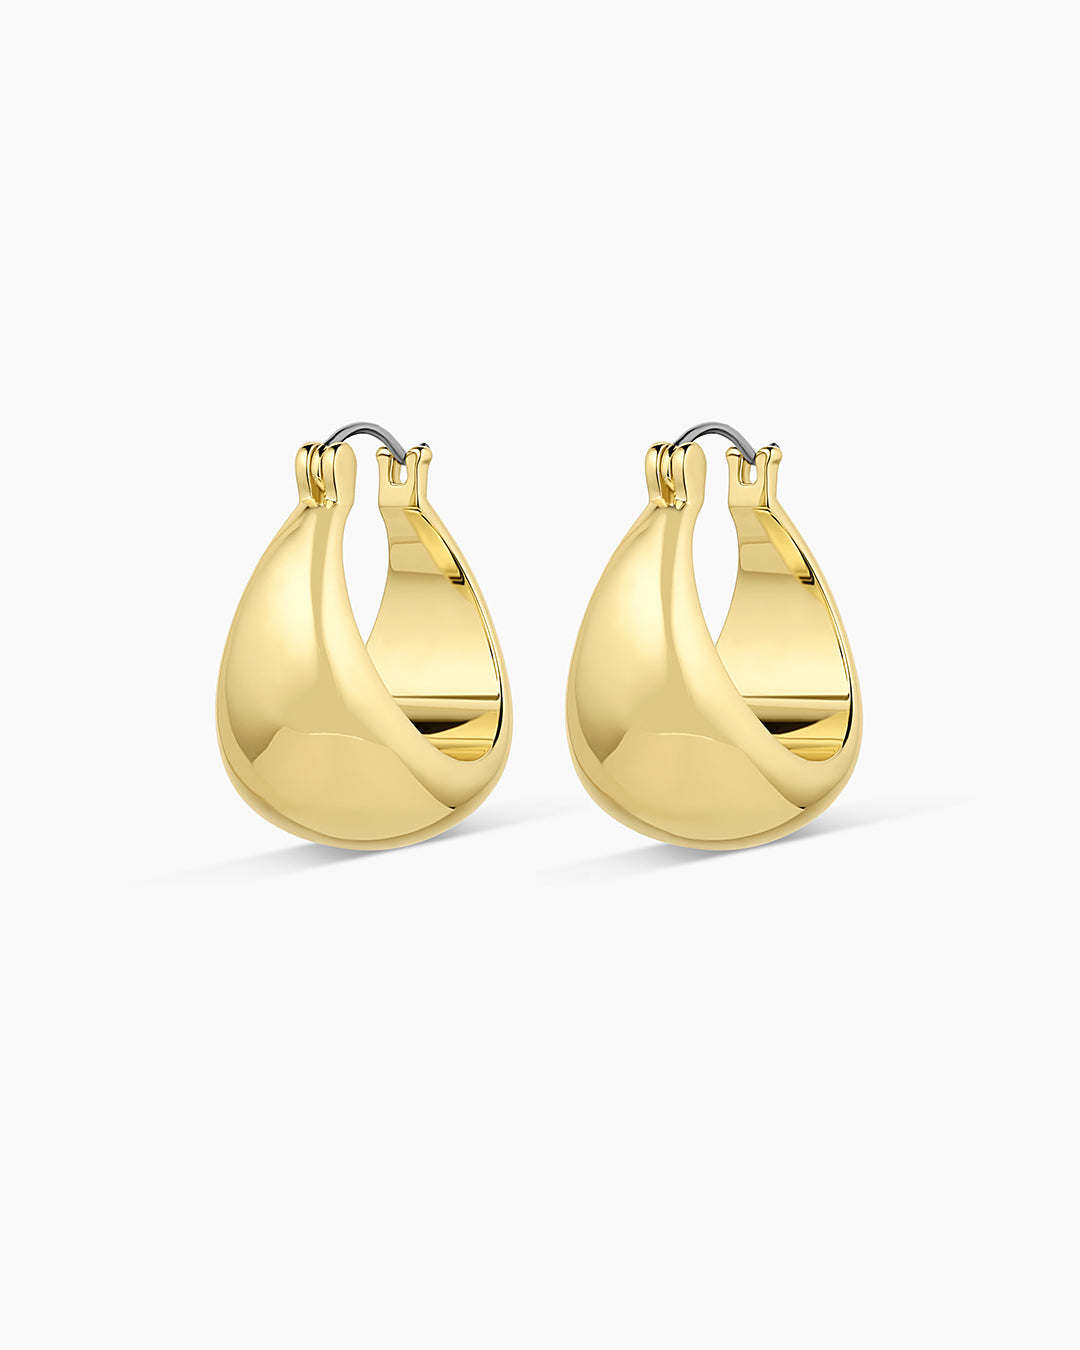 Buy quality Cz fancy triangle fancy earrings 22k gold in Rajkot